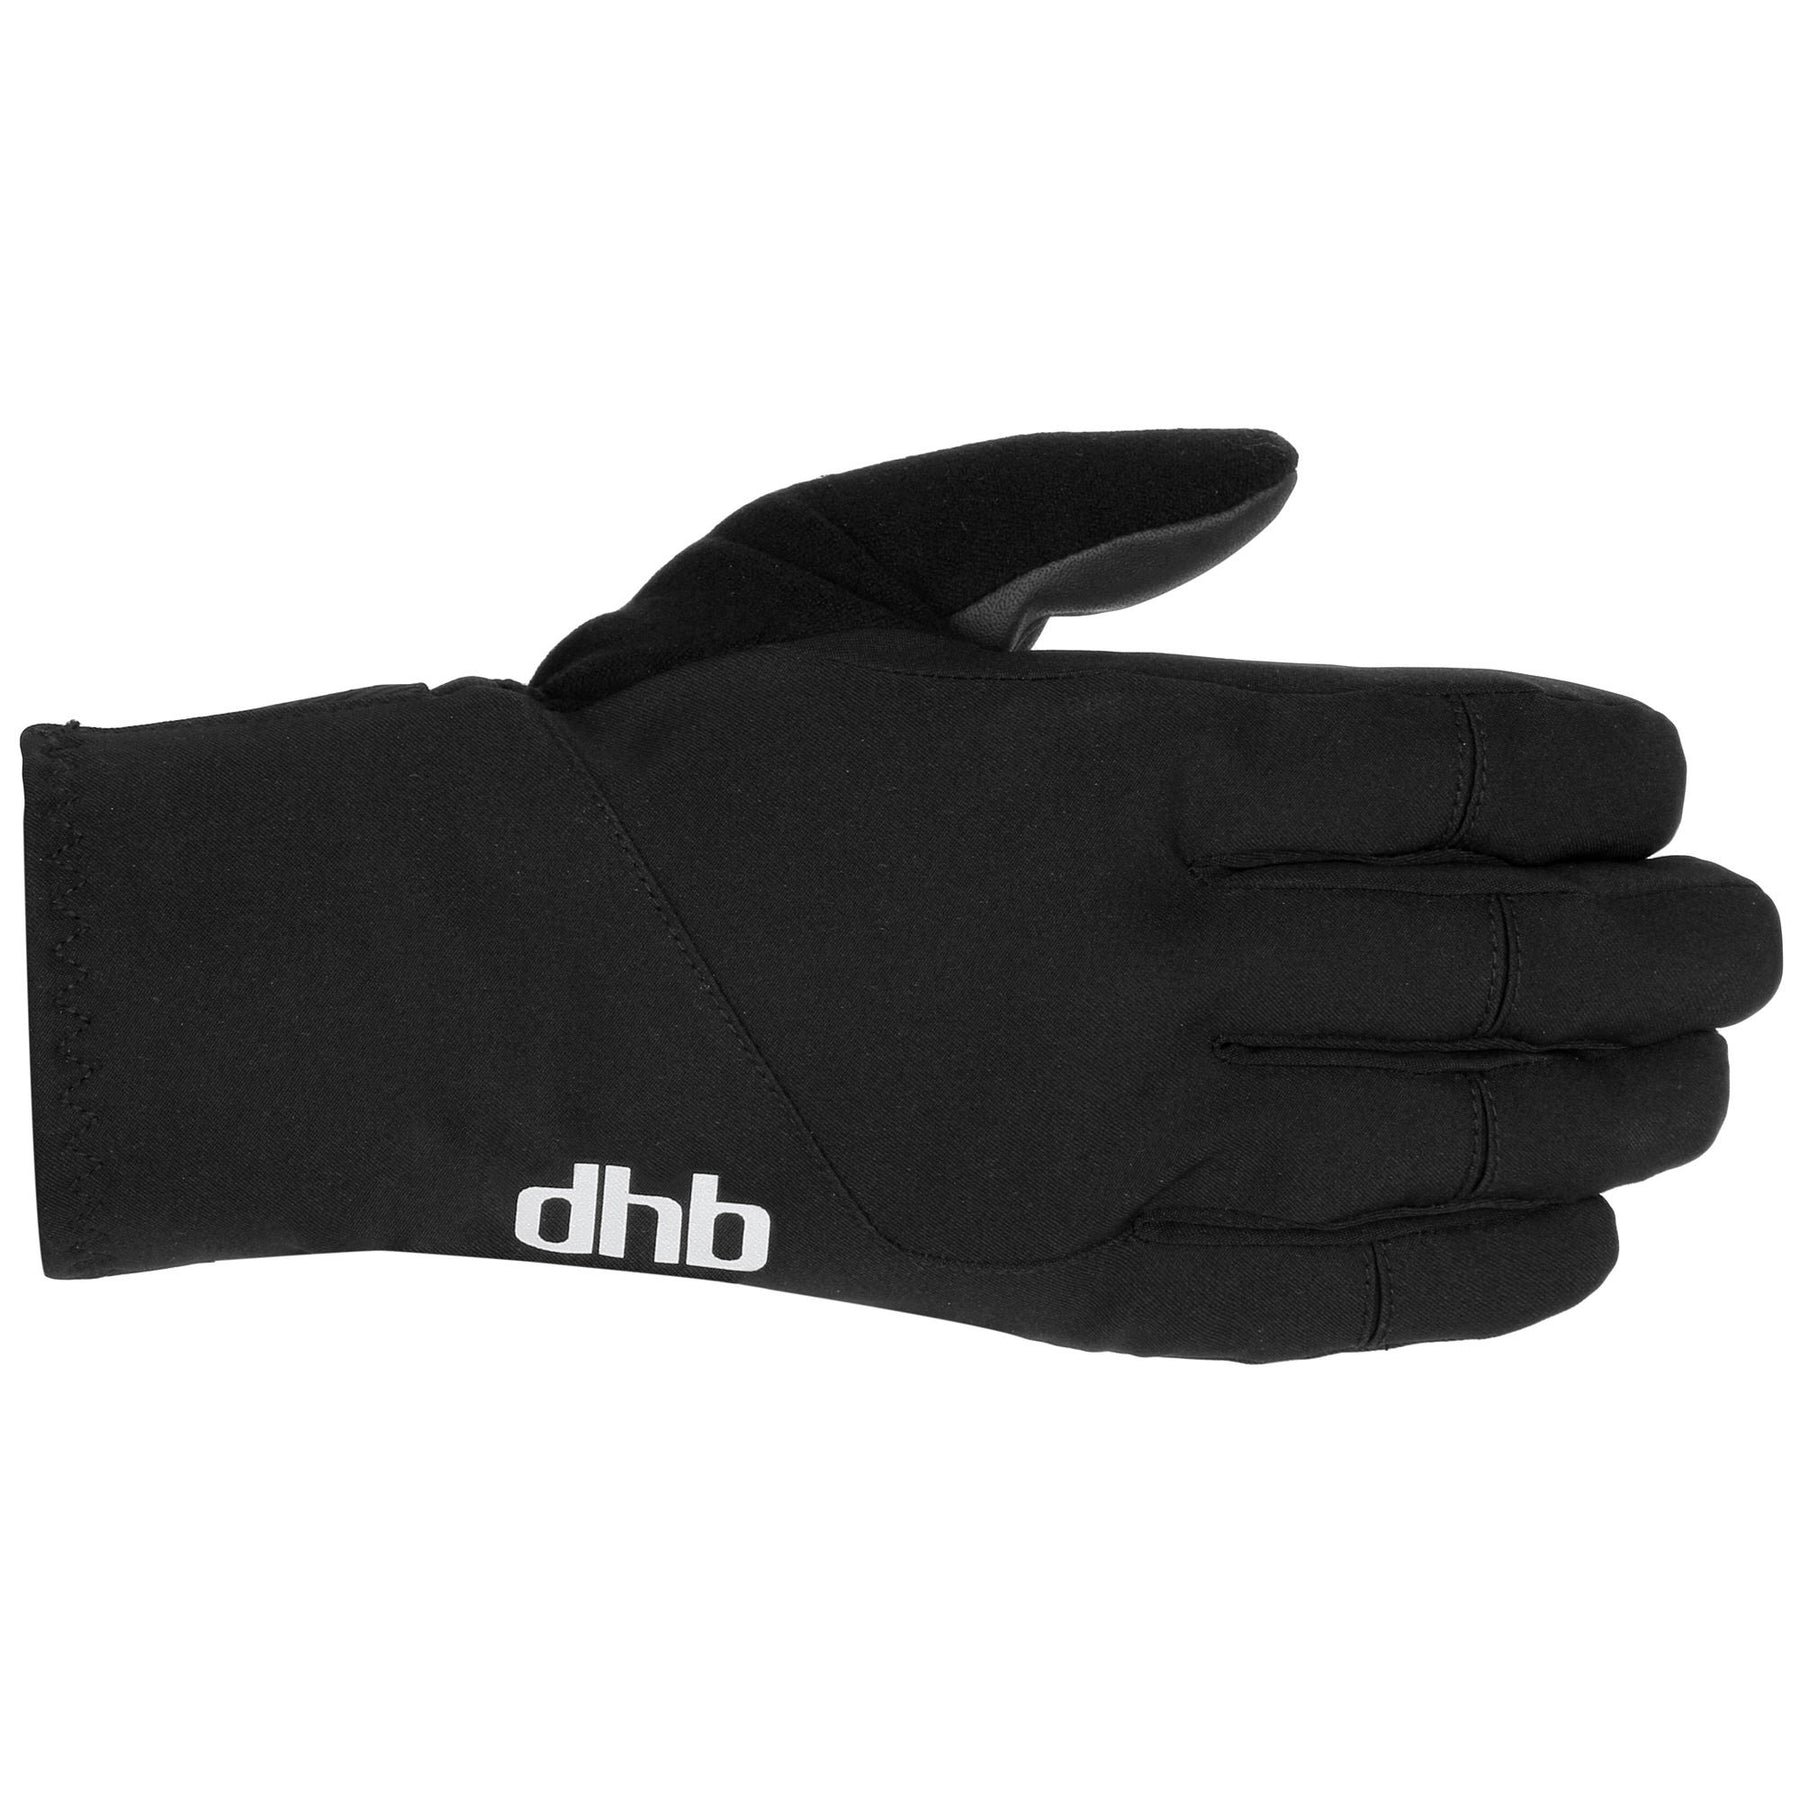 dhb Extreme Winter Gloves – dhb